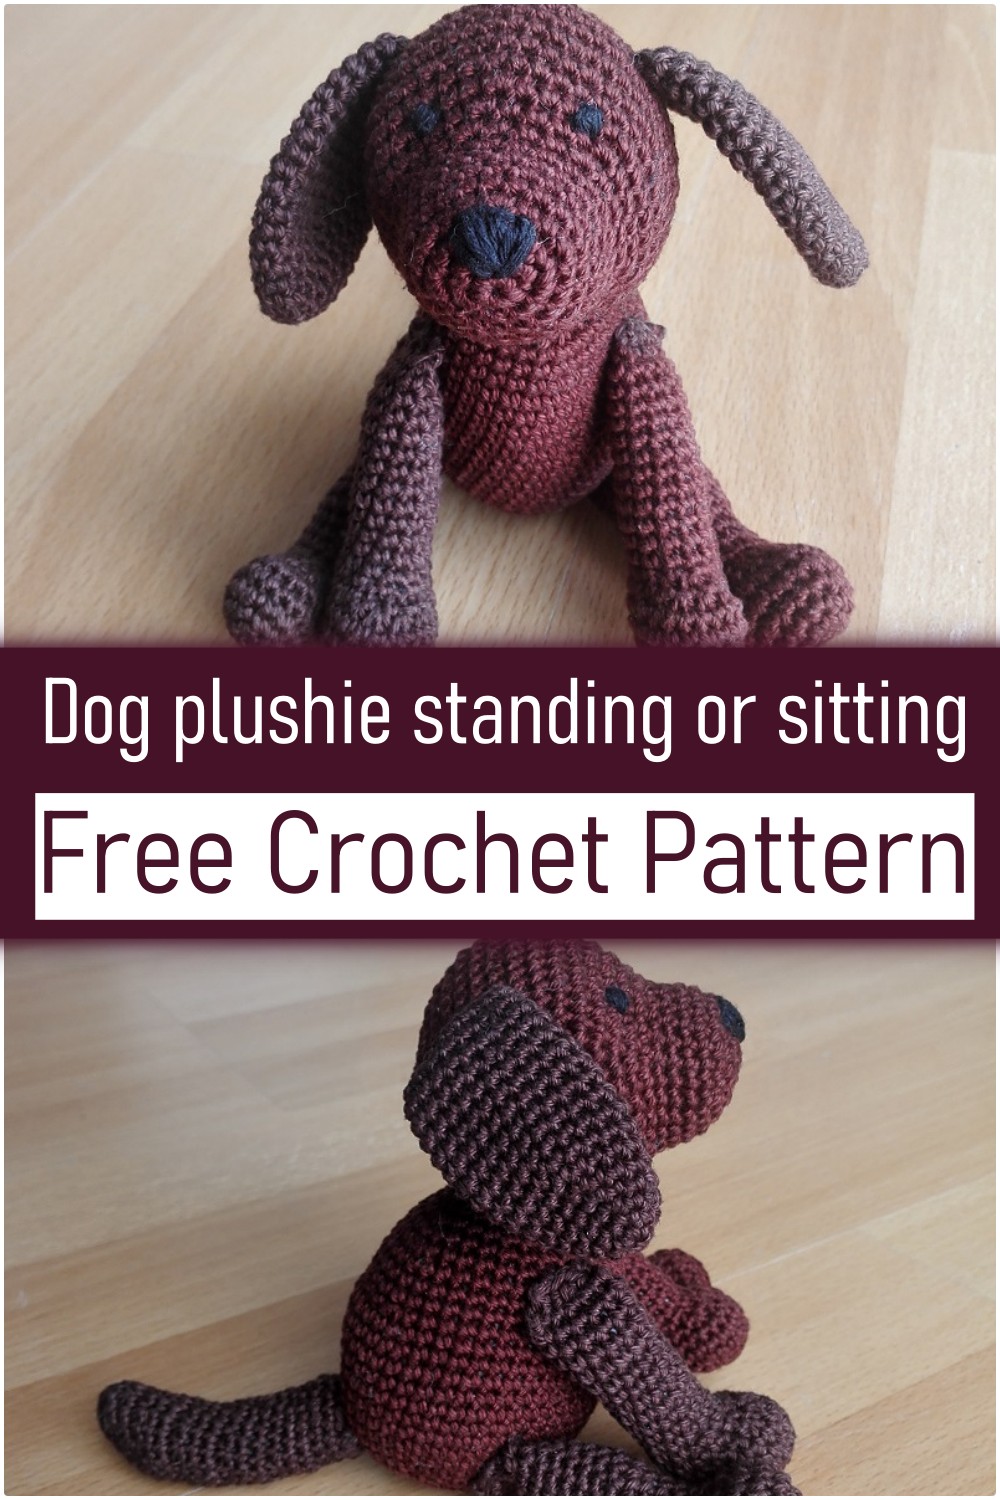 Dog plushie (standing or sitting)